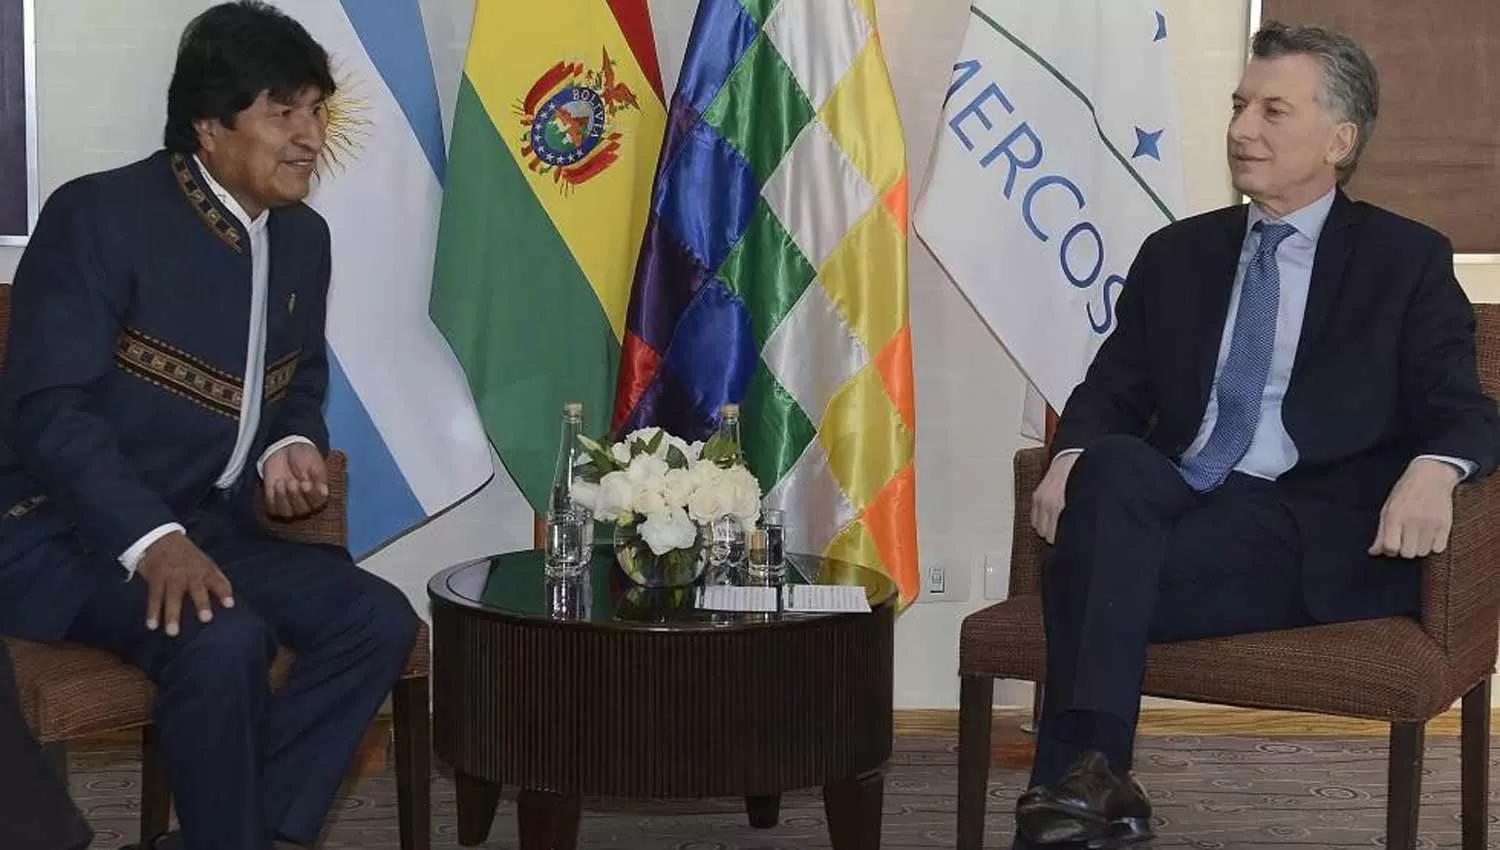 ANUNCIO DE EVO. El presidente de Bolivia confirmó que, en su país, los argentinos tendrán los mismos derechos que los bolivianos (EL PAÍS).